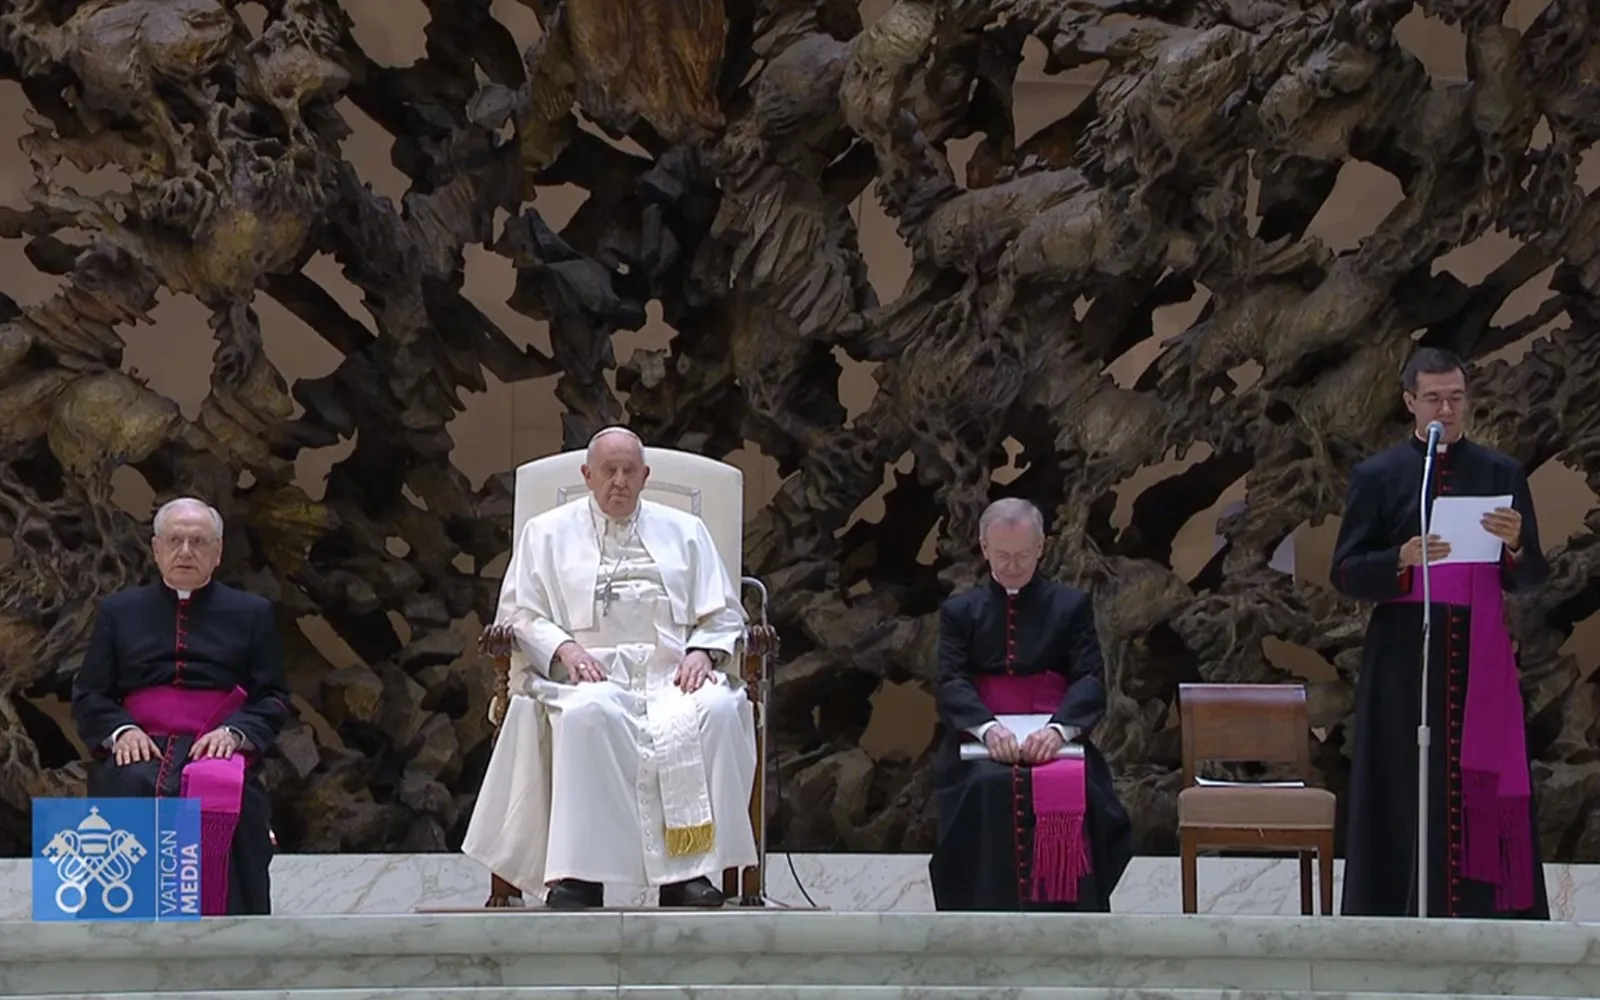 El Papa Francisco cede de nuevo la lectura de su catequesis: “Estoy un poco resfriado”?w=200&h=150